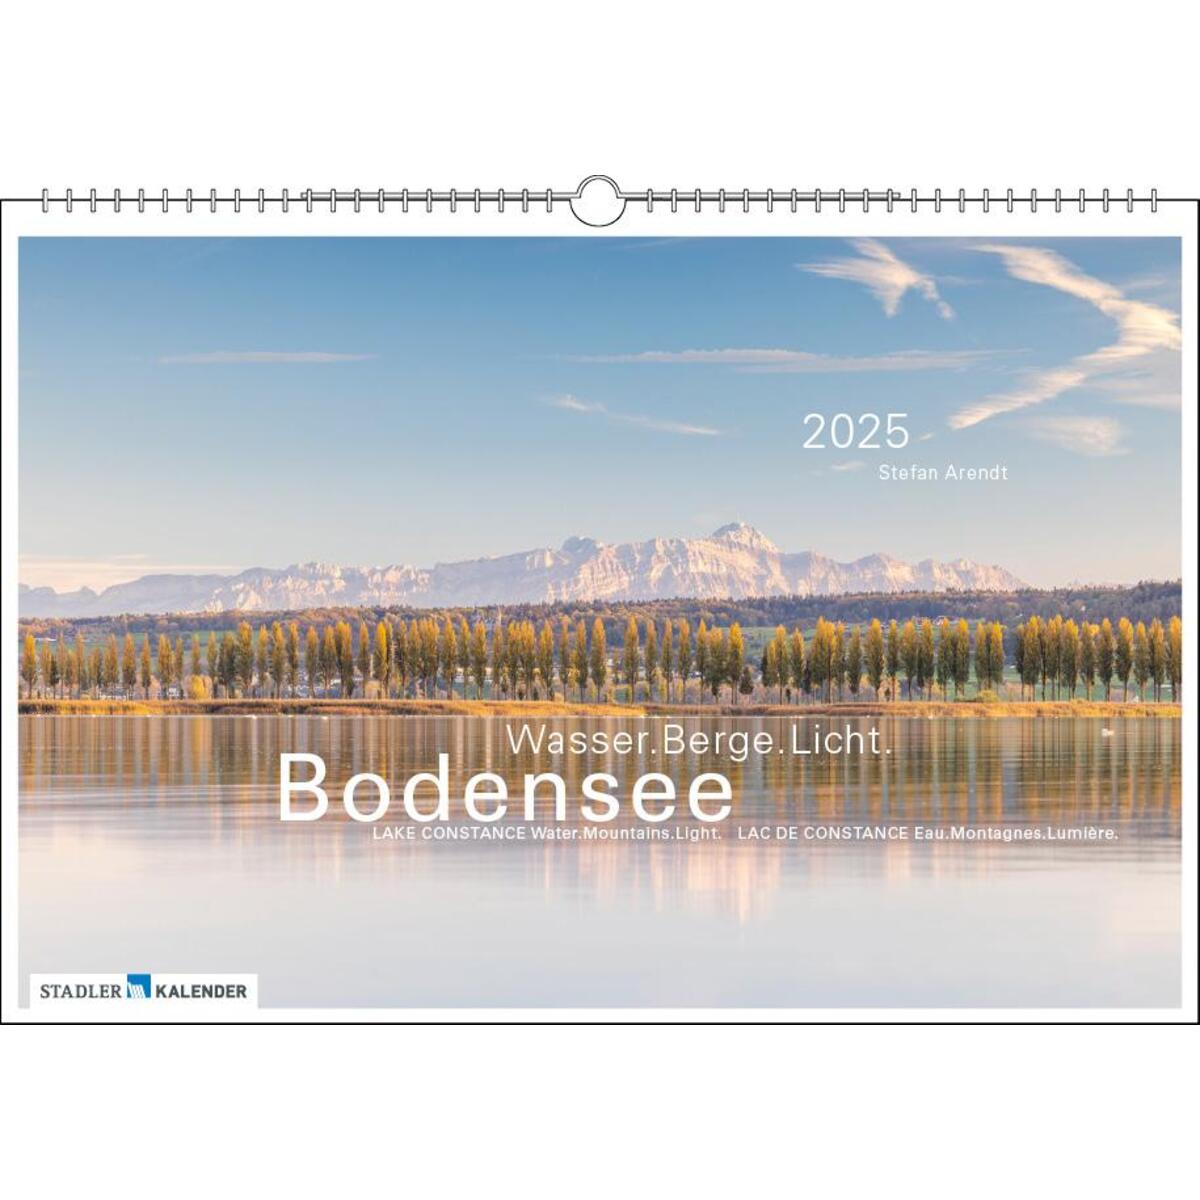 Bodensee Wasser.Berge.Licht 2025 von Stadler Kalender